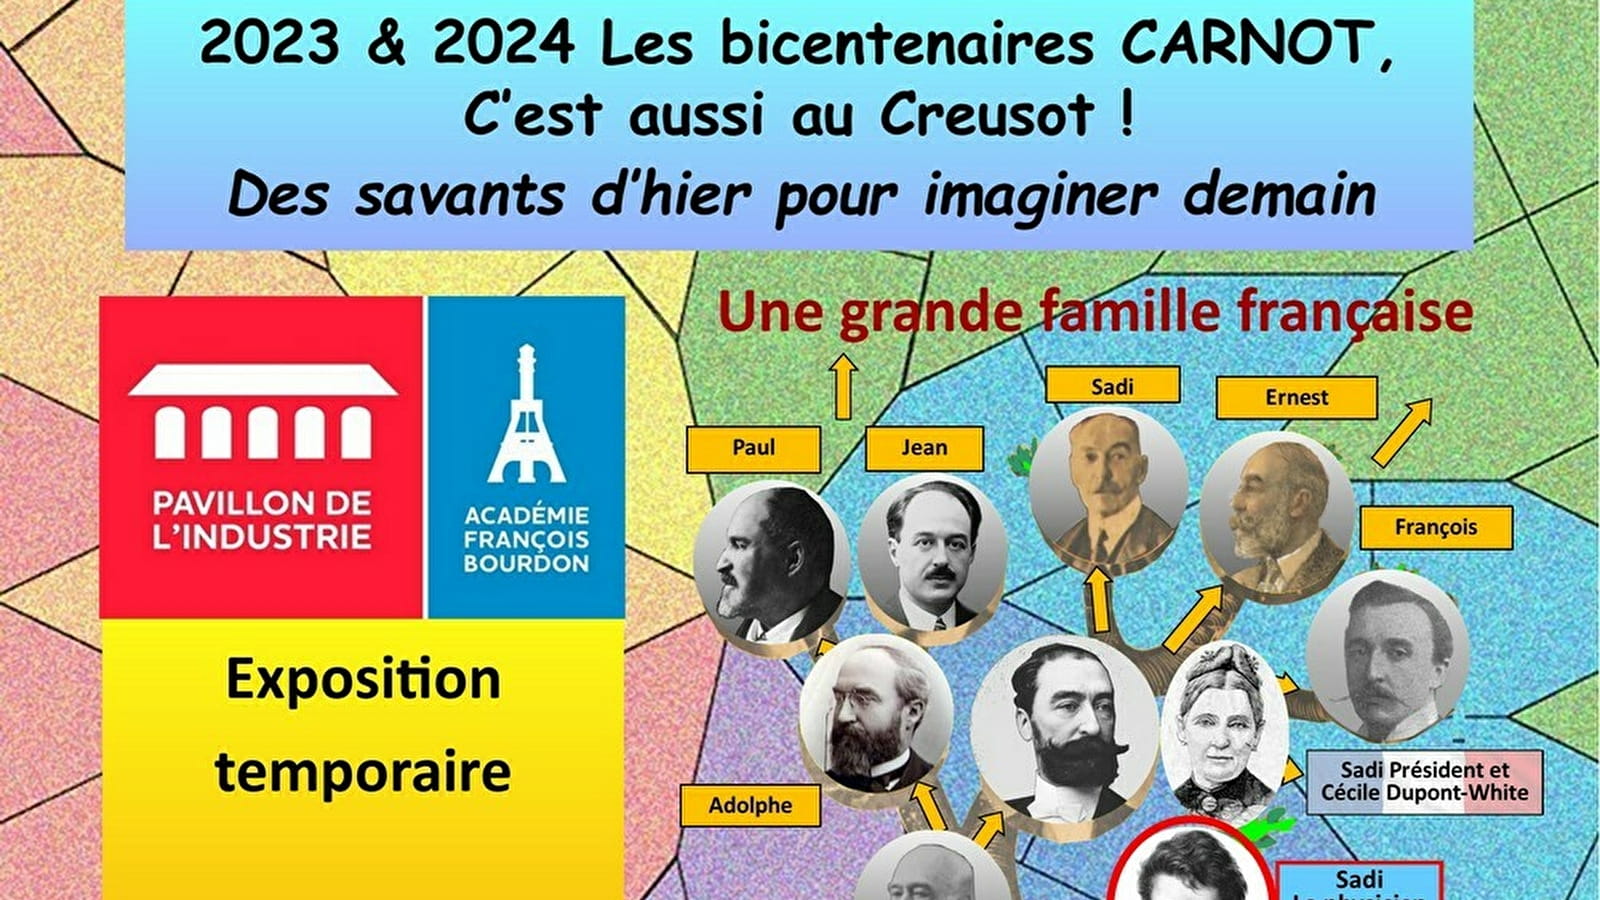 Exposition temporaire : "2023-24 - Les bicentenaires Carnot,... Du 10 avr au 31 oct 2024